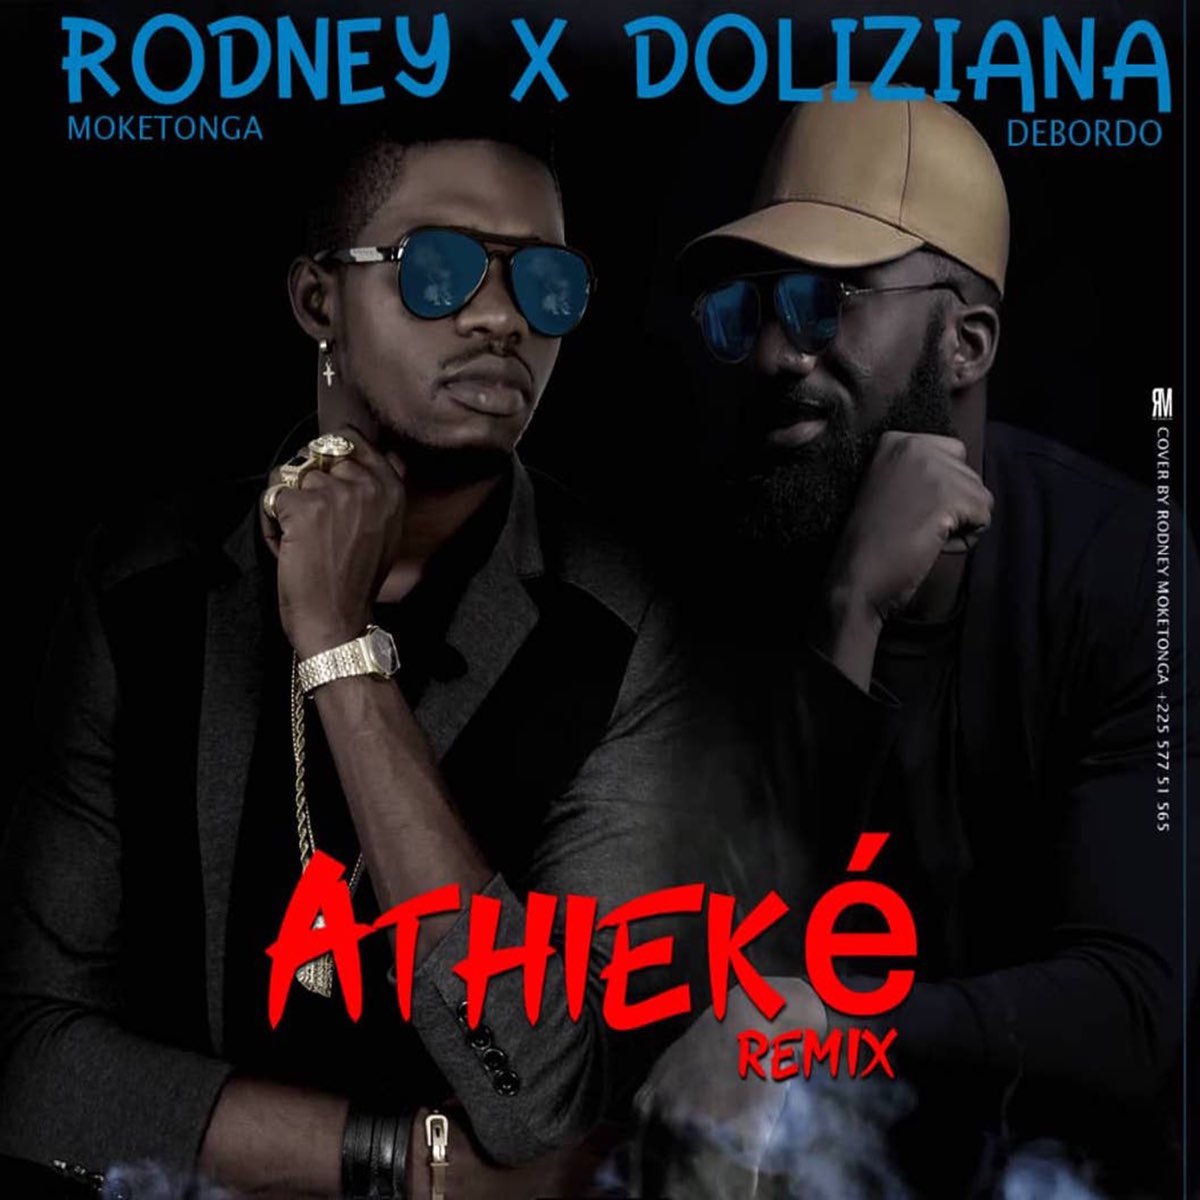 Athieké - Single by Rodney Moketonga on Apple Music